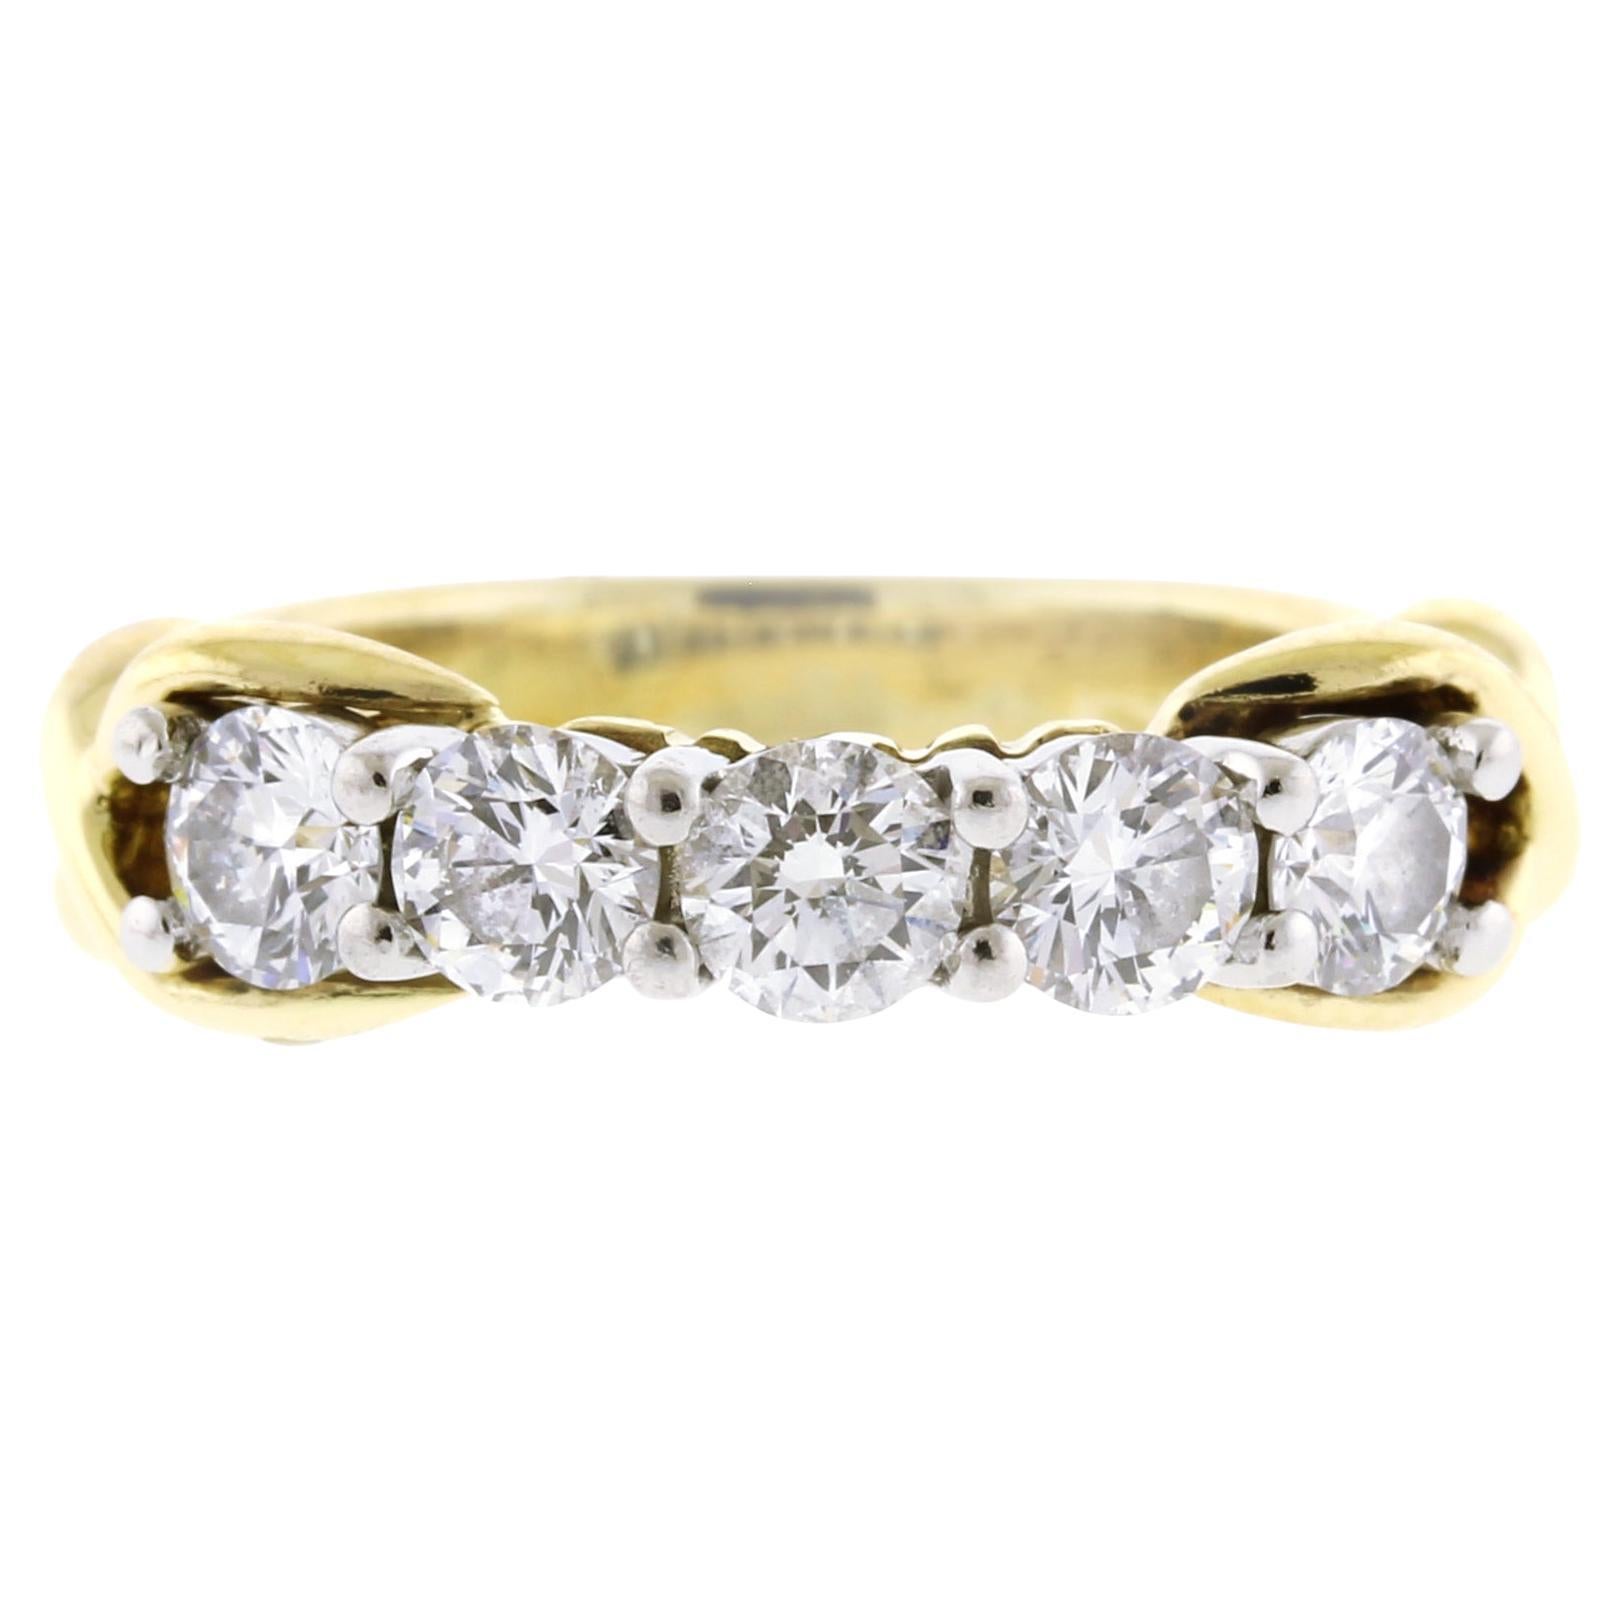 Tiffany & Co. 5 Diamond X Band Ring